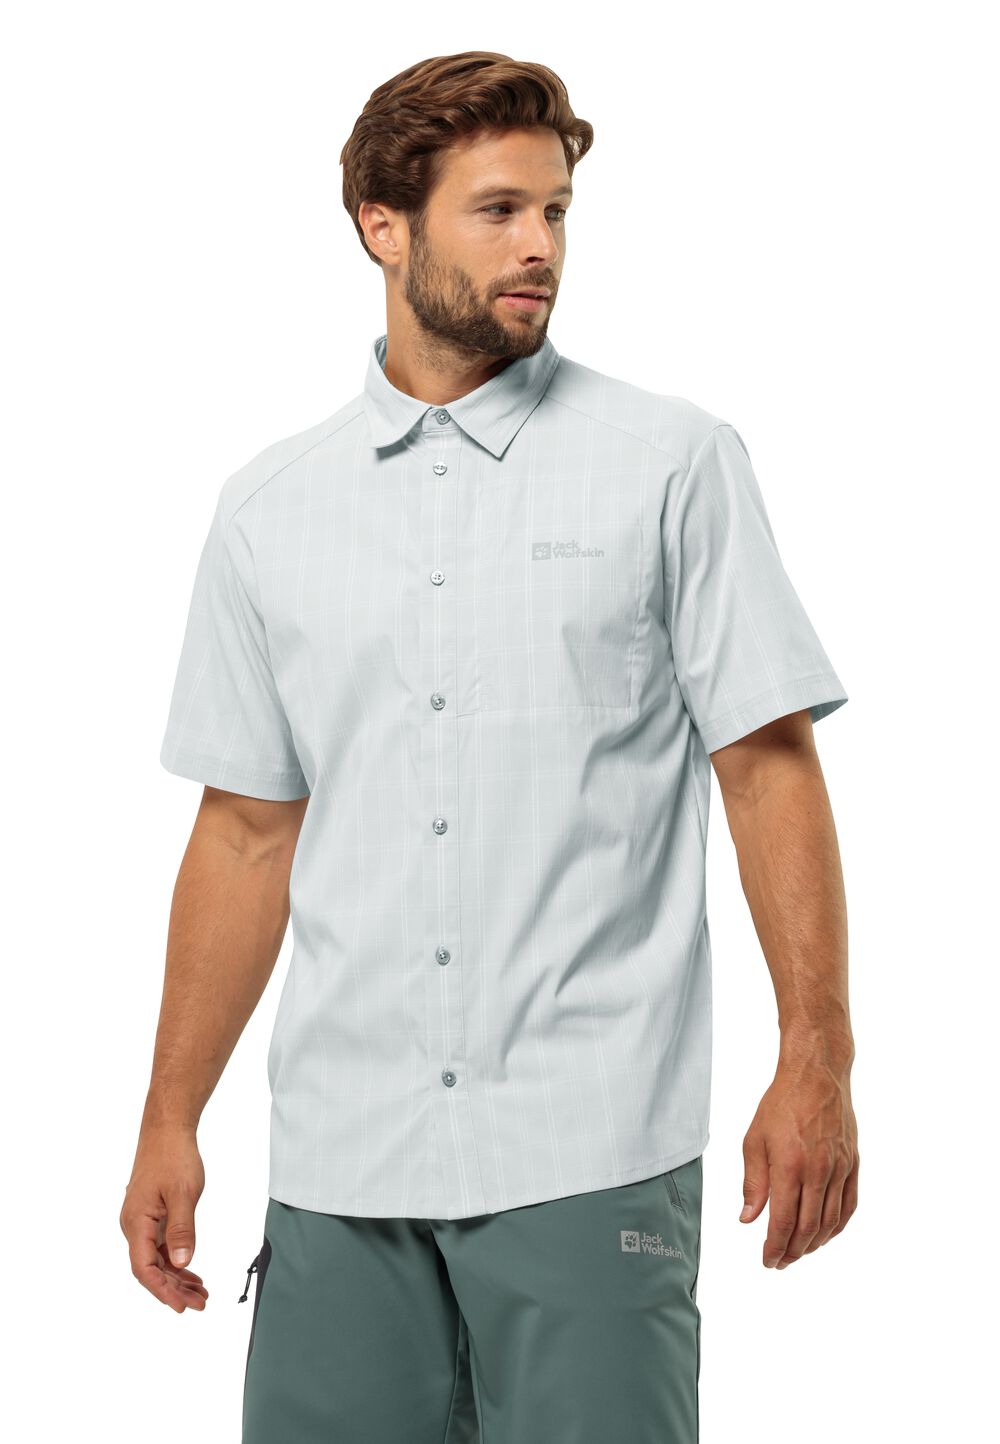 Jack Wolfskin Norbo S S Shirt Men Overhemd met korte mouwen Heren S grijs cool grey check